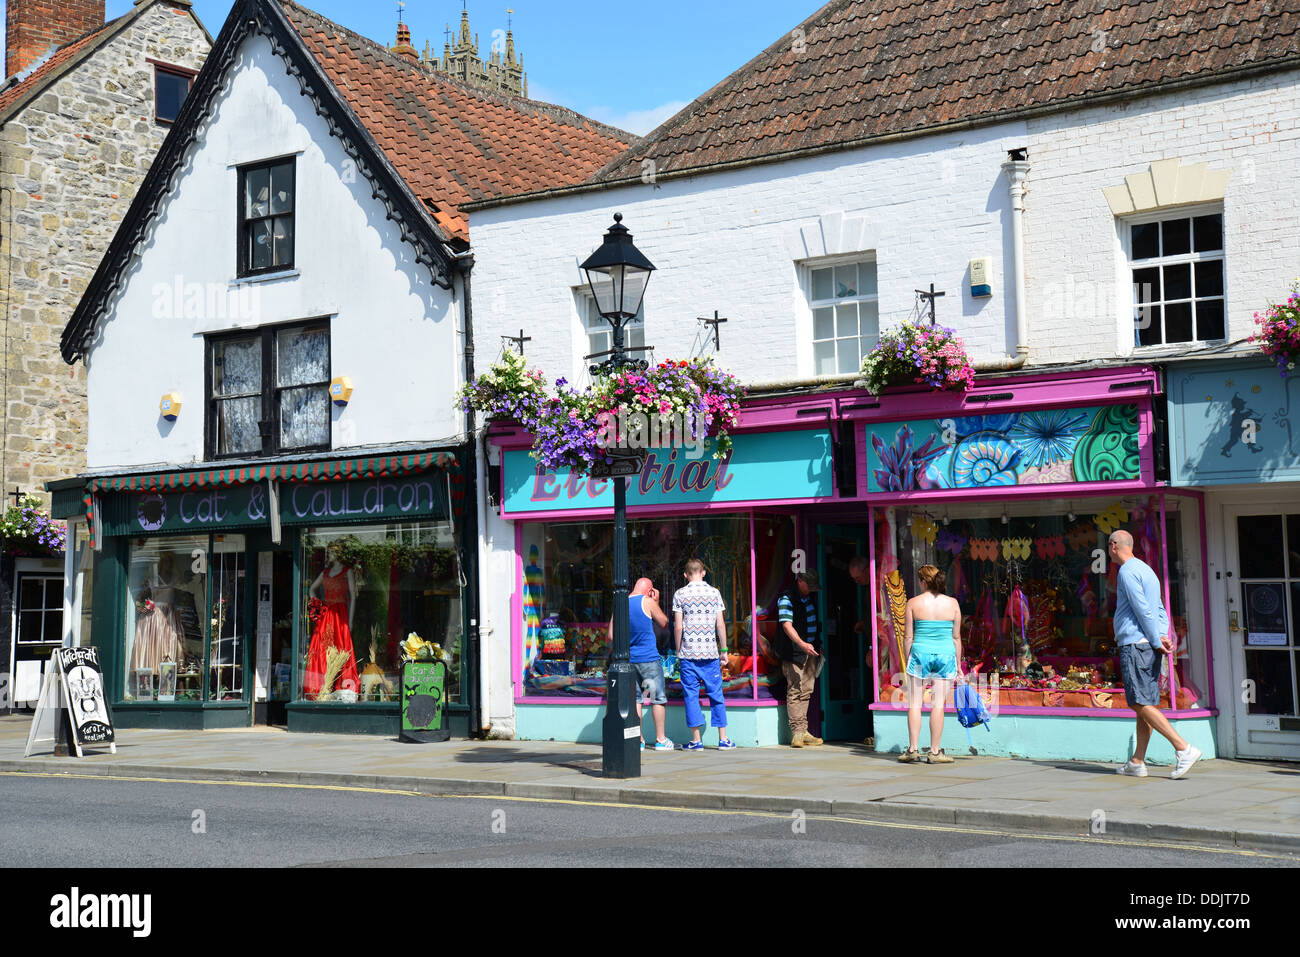 La sorcellerie boutiques sur place du marché, Glastonbury, Somerset, England, United Kingdom Banque D'Images